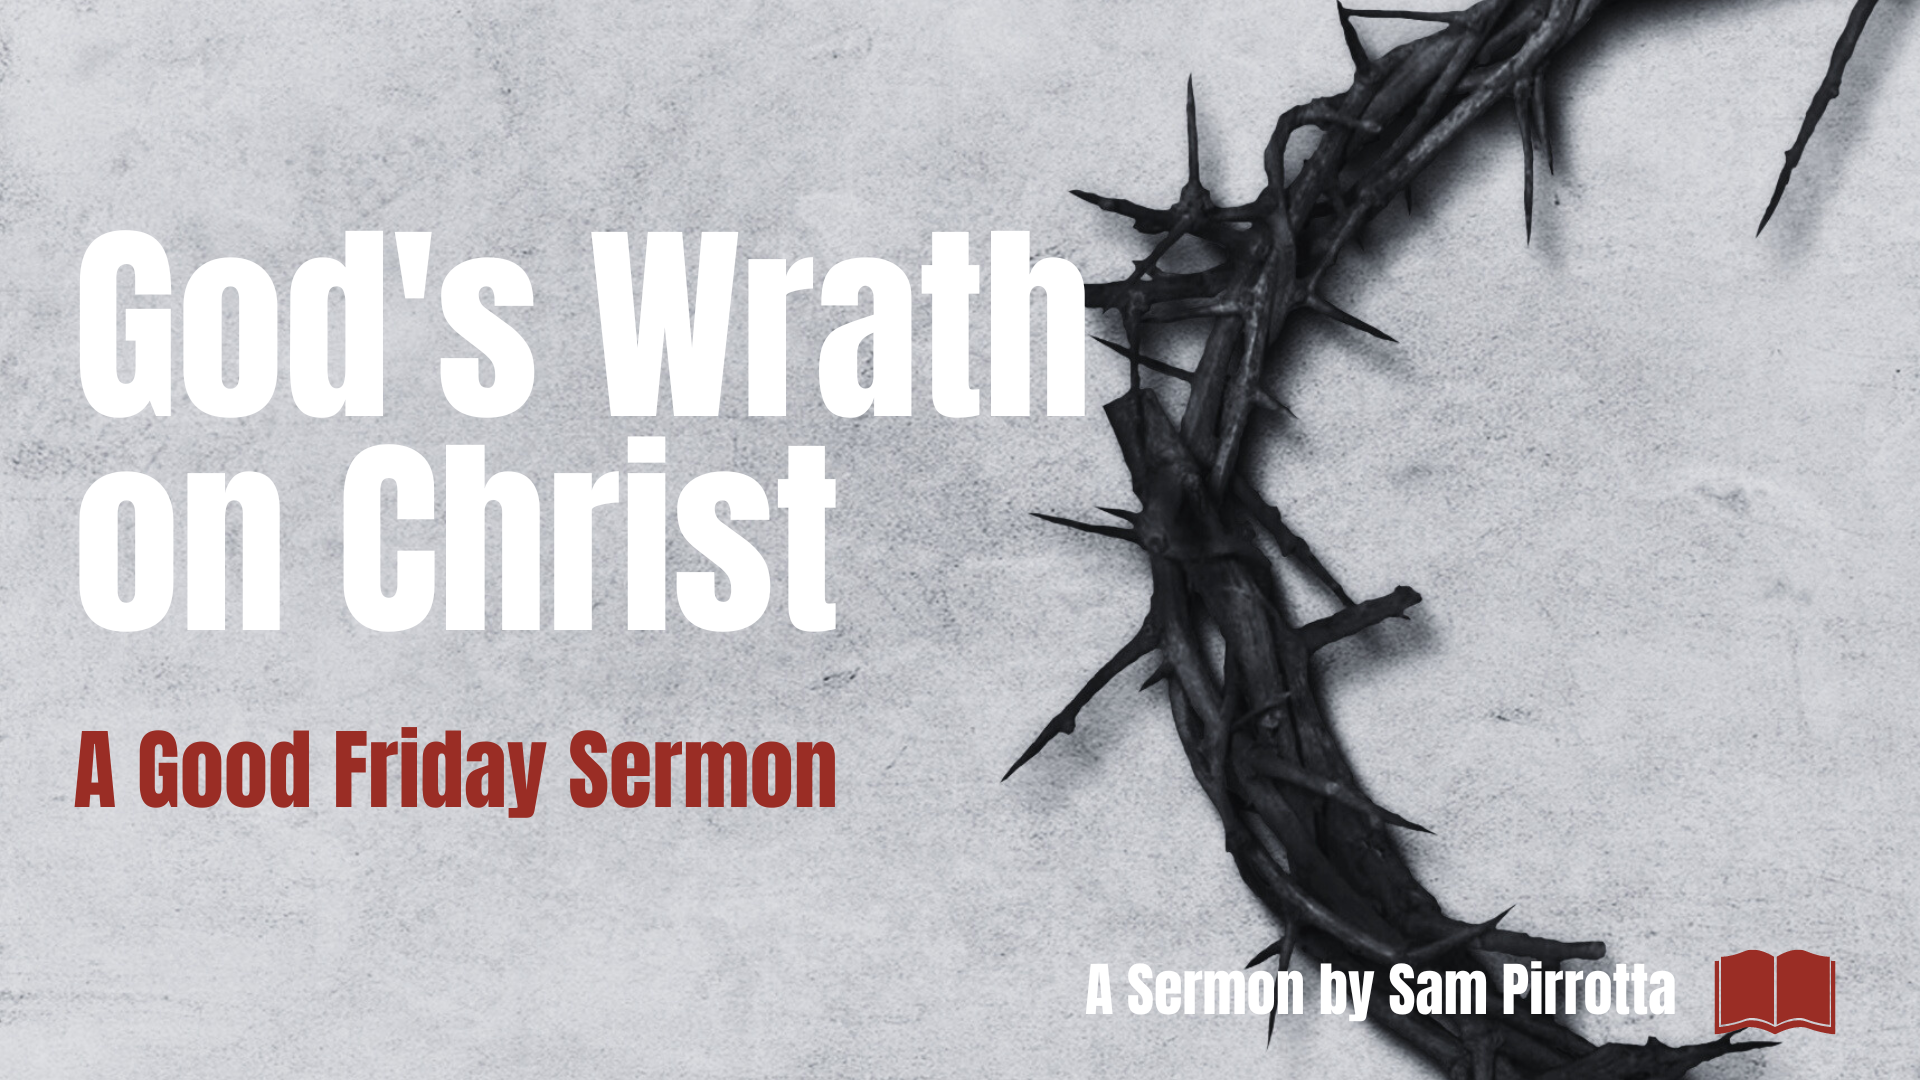 God's Wrath on Christ: A Good Friday Sermon